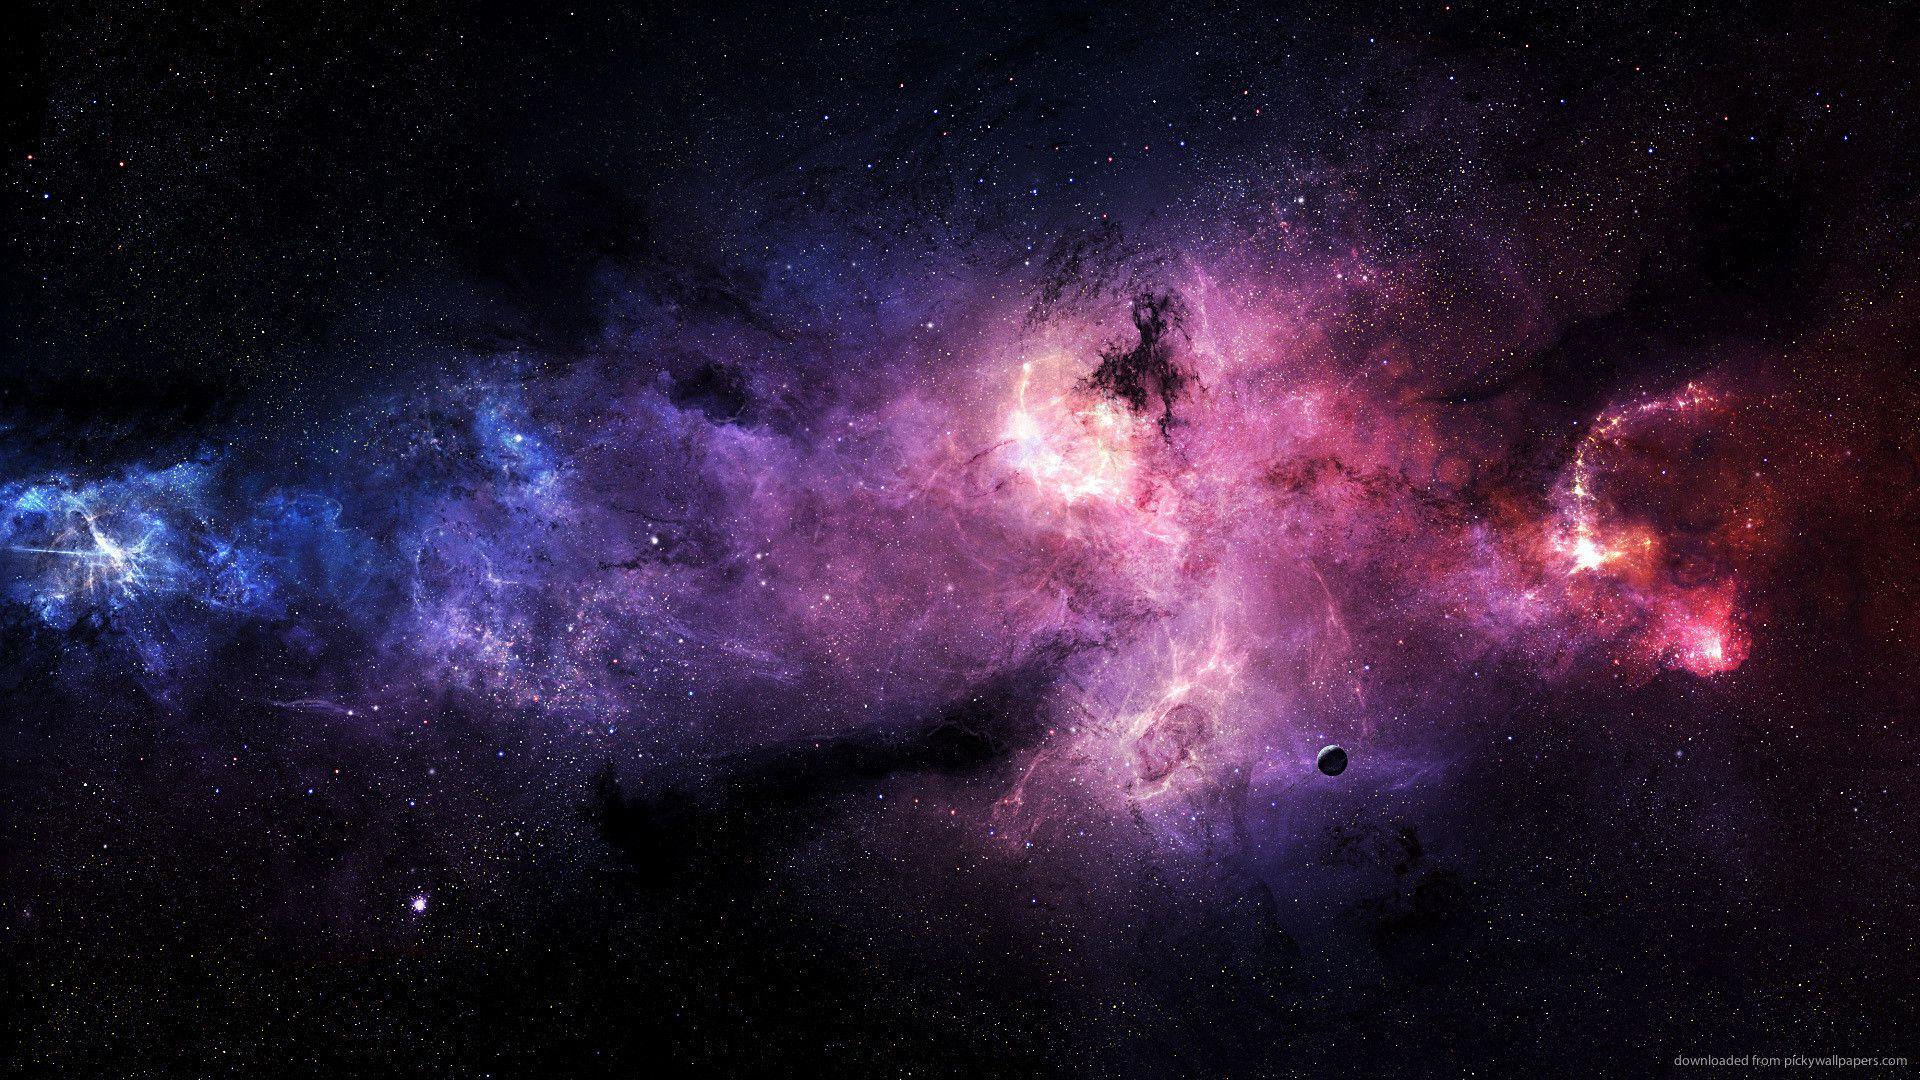 Hình nền Galaxy sẽ đưa bạn đến với một chuyến phiêu lưu hấp dẫn trong không gian vô tận. Với những hình ảnh tuyệt đẹp về thiên hà, hệ sống, đầu sao và các tiểu hành tinh, bạn sẽ khám phá được những điều kì diệu trong thế giới vũ trụ. Đón xem ngay hình ảnh liên quan!